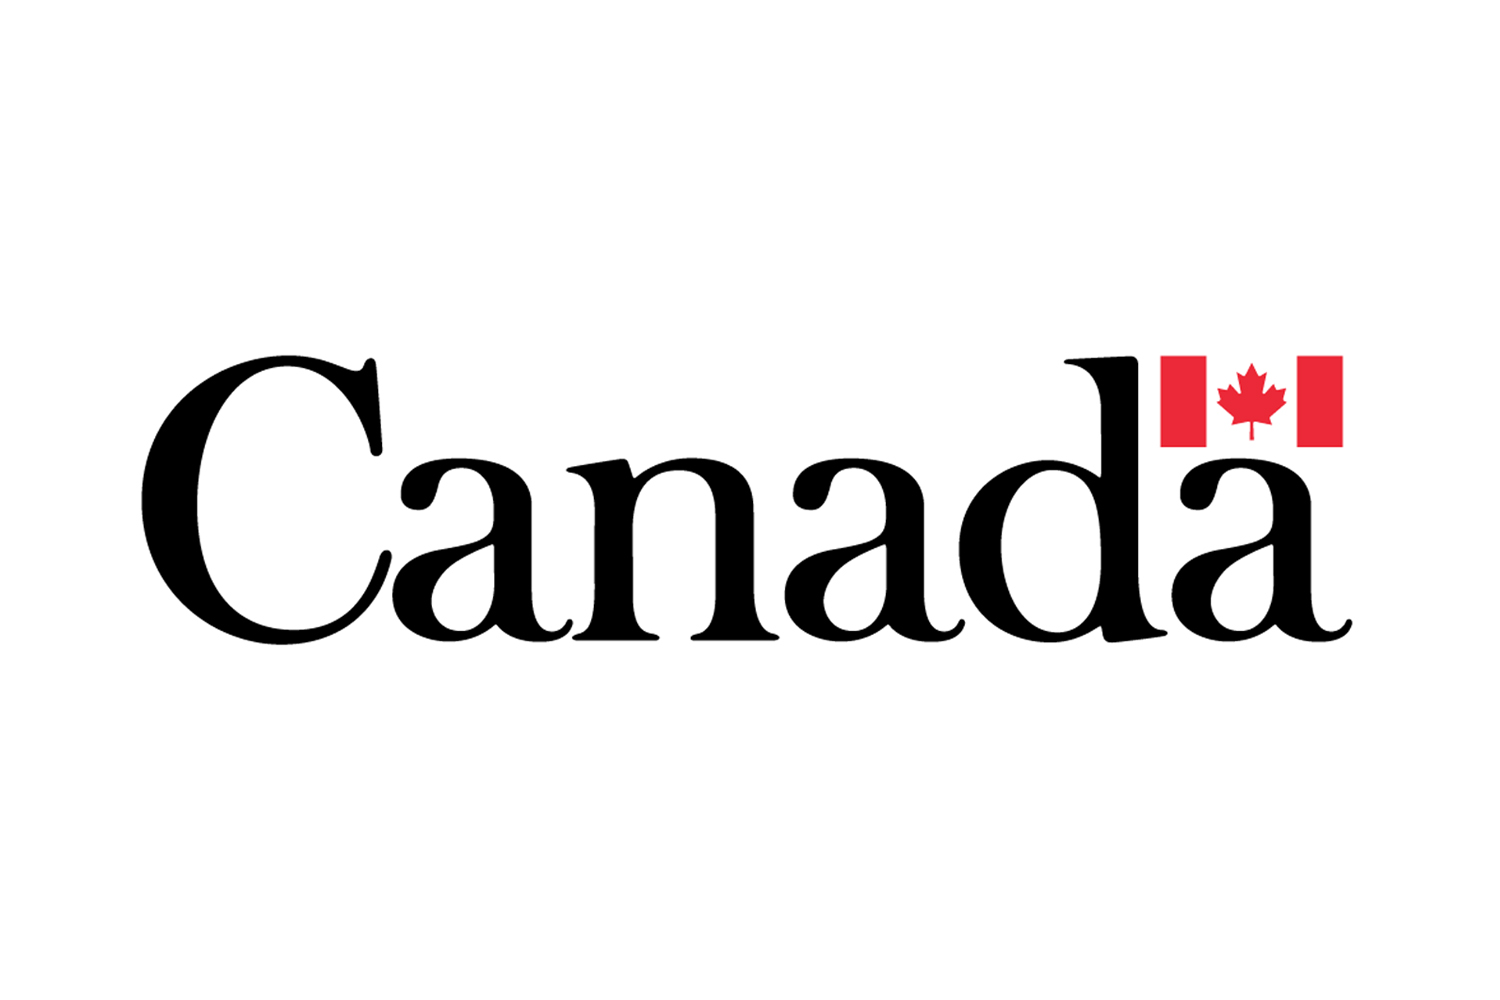 Le gouvernement du Canada rapatrie davantage de Canadiens et leurs familles de Wuhan, en Chine